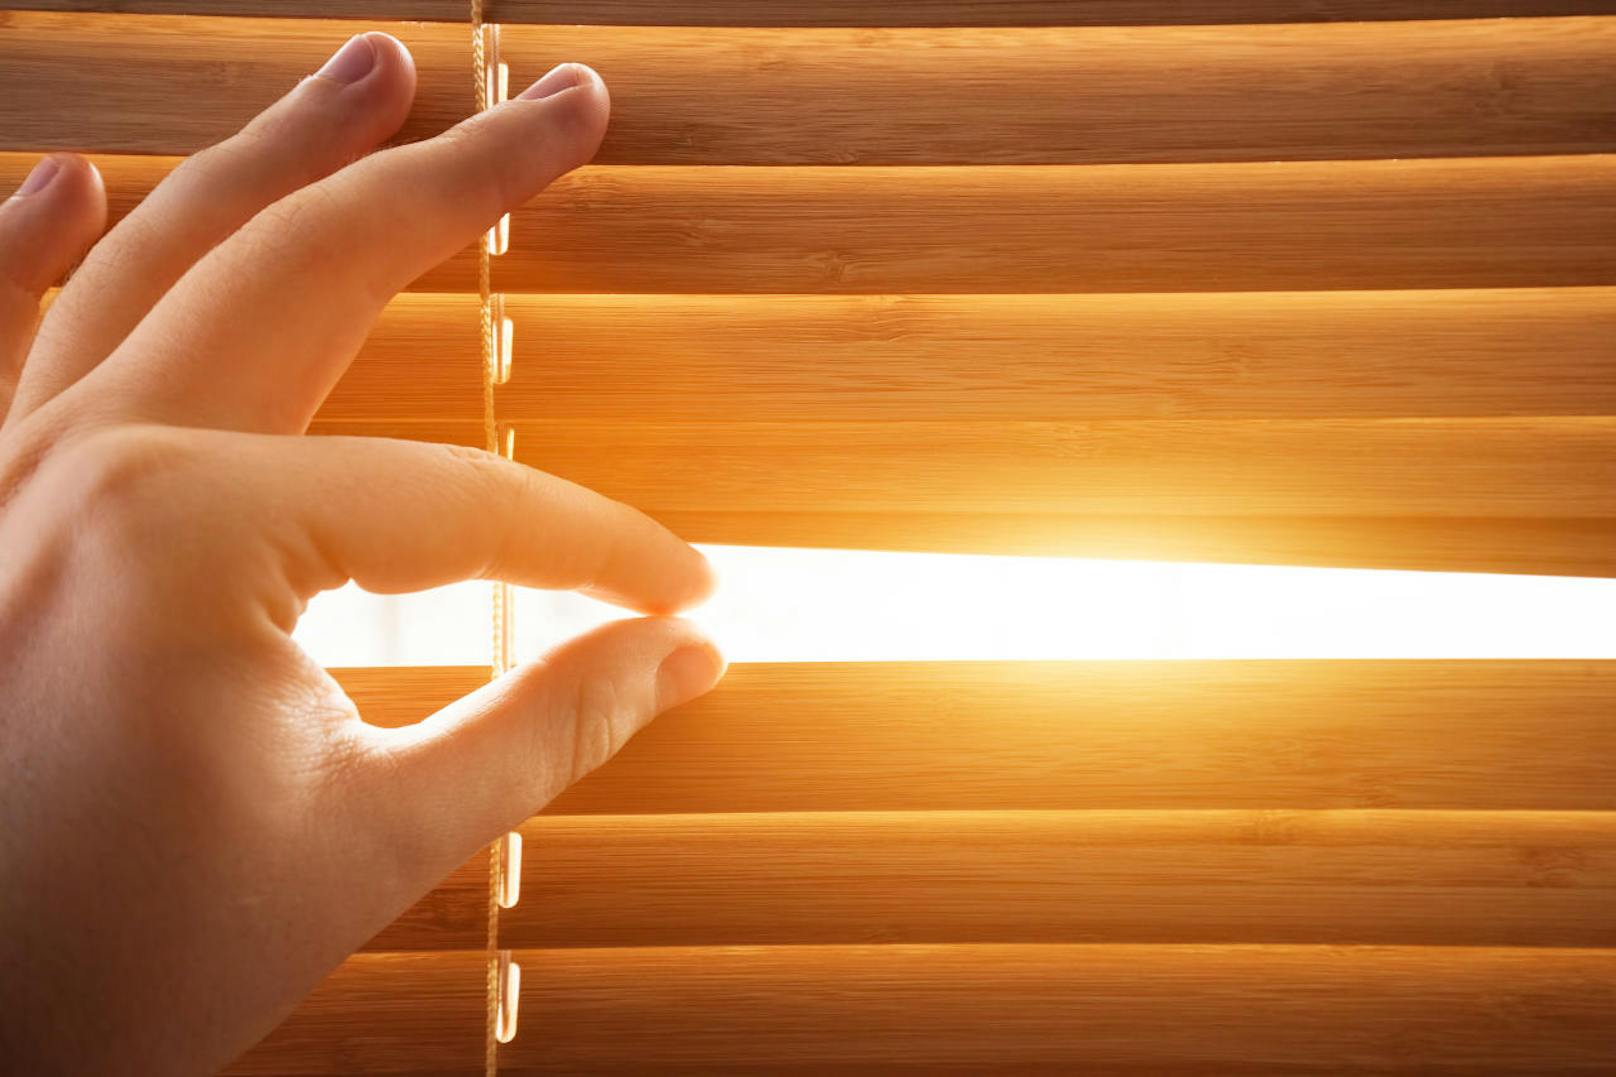 Die <b>Fenster sollten Sie nur am Morgen aufreißen</b>, wenn es draußen noch nicht allzu heiß ist. Danach sollten Sie die Fenster geschlossen halten und <b>das Schlafzimmer verdunkeln</b>. So kann es sich tagsüber nicht durch einfallende Sonnenstrahlen aufheizen.